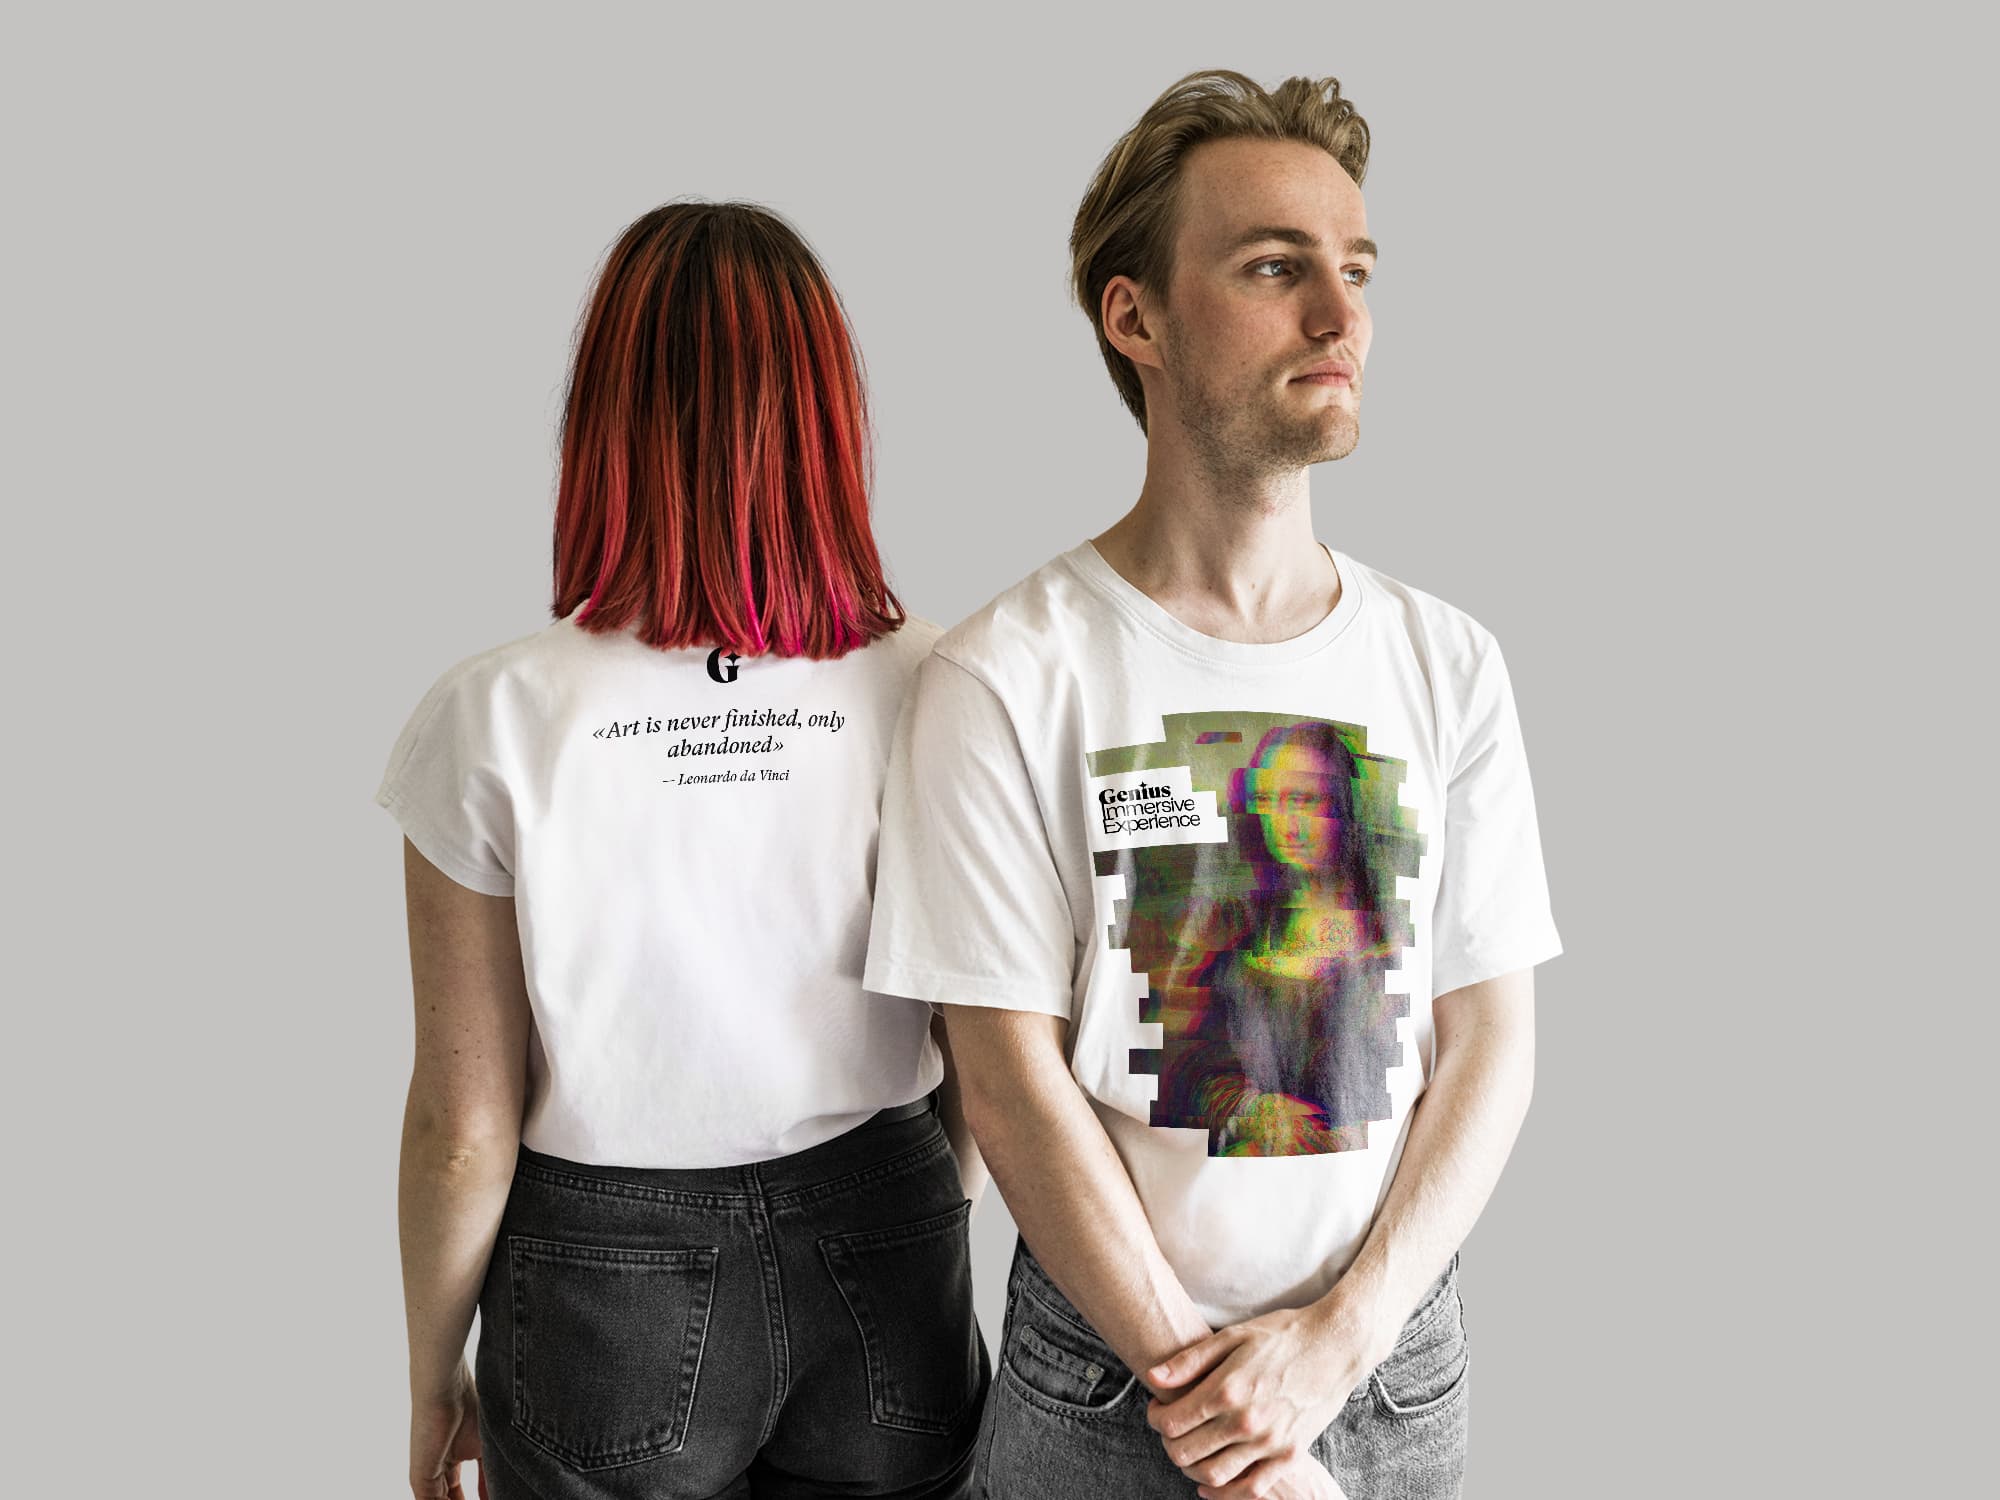 Девушка и парень стоят в футболках с логотипом шоу.